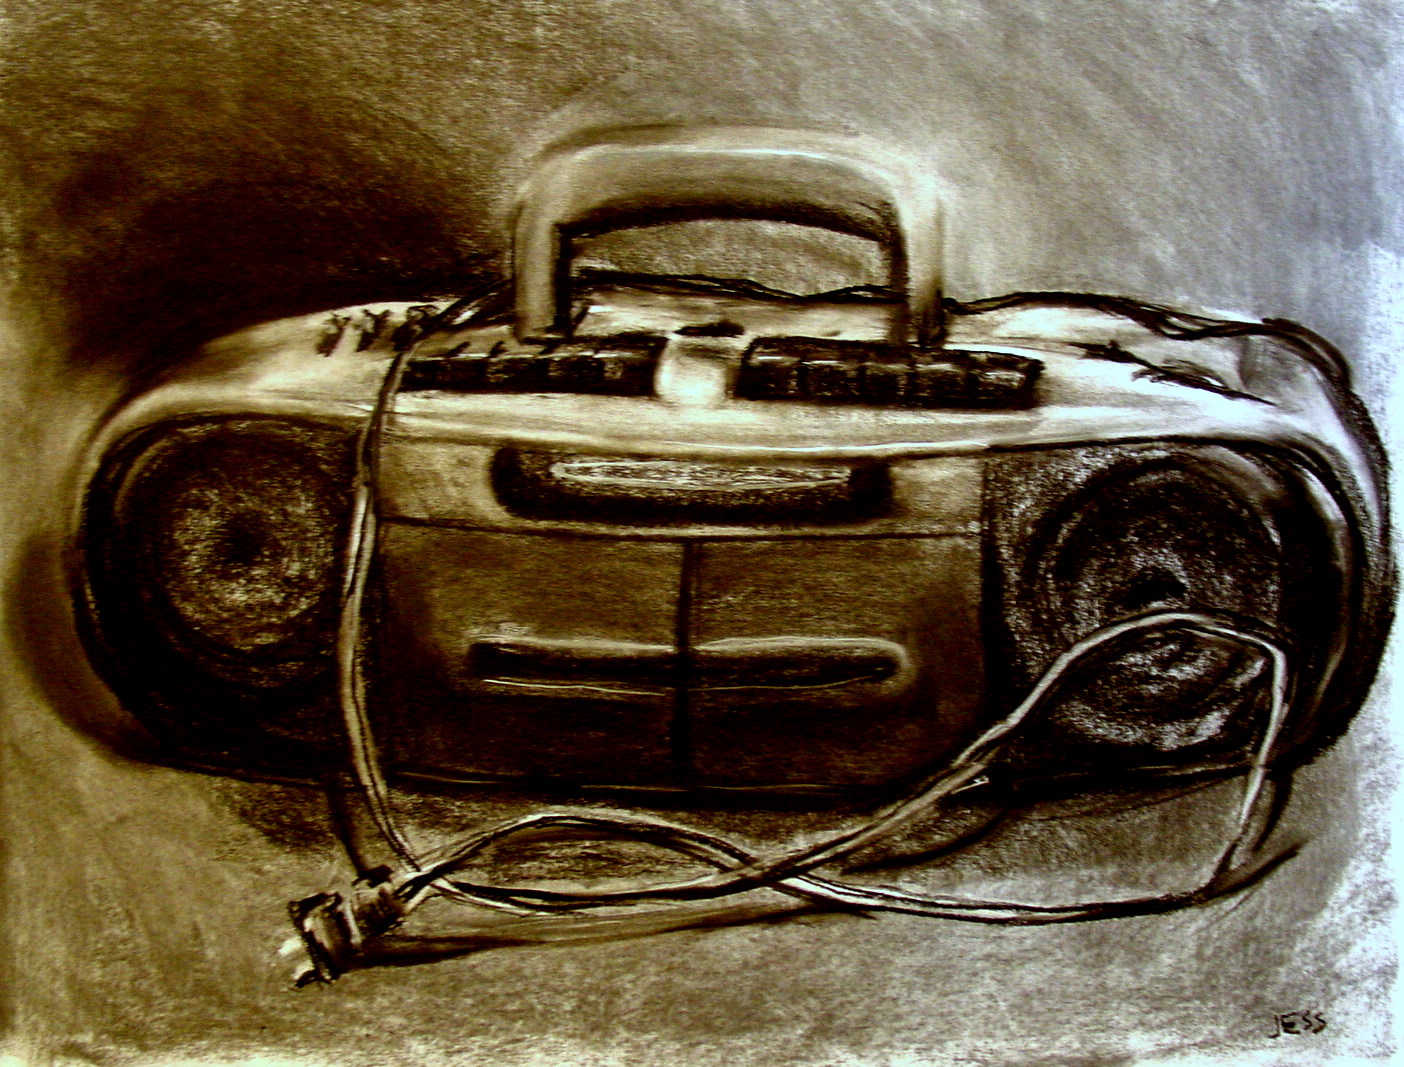 boombox-still-life-charcoal-18x24-jessica-siemens-2009